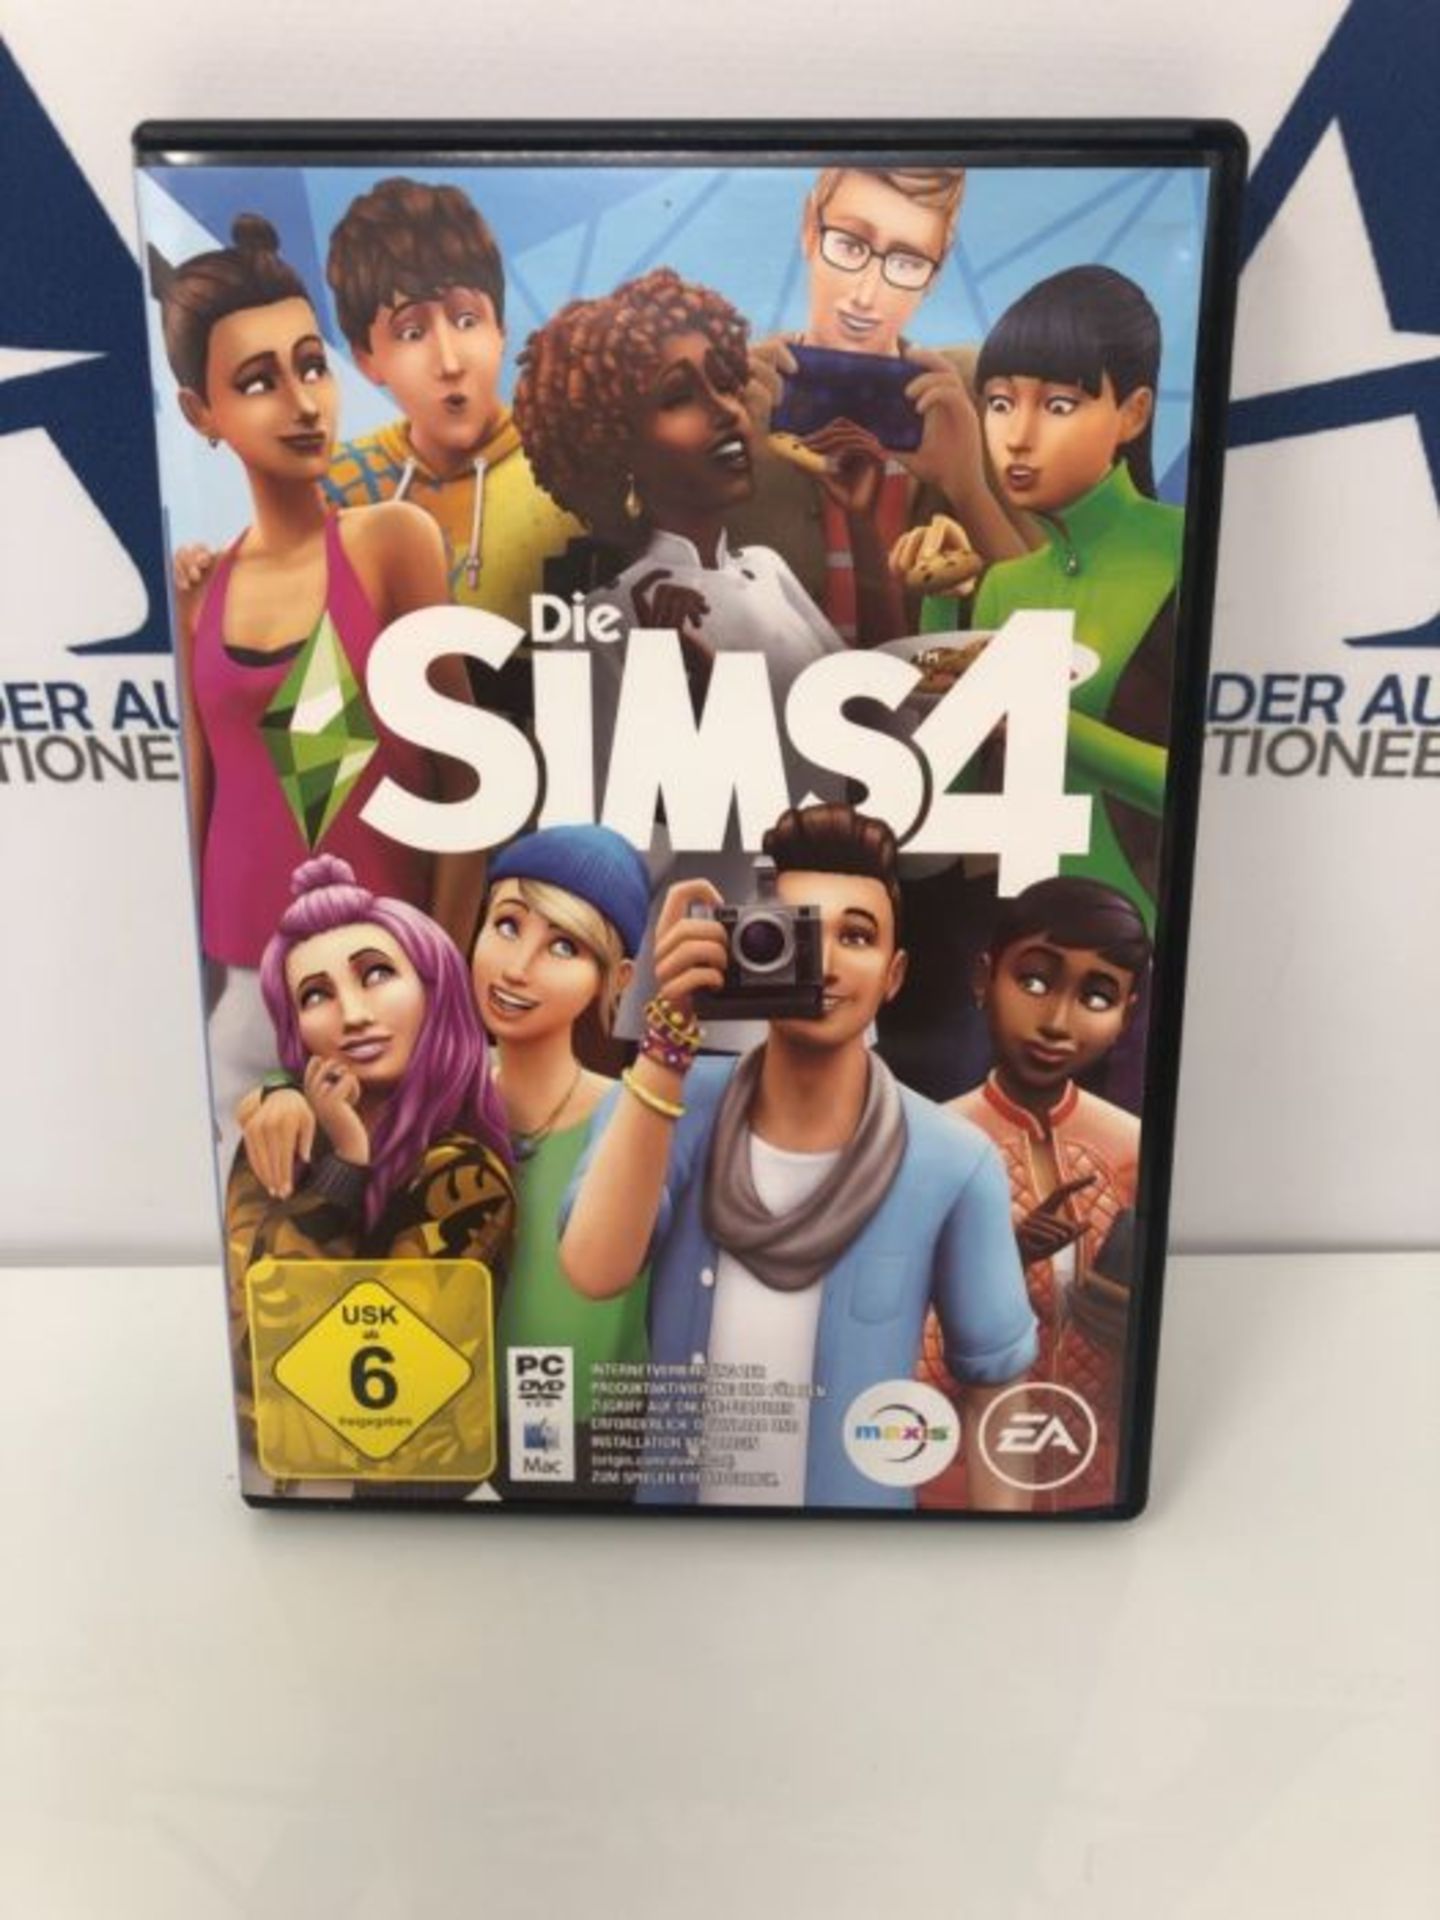 Die Sims 4 Standard Edition PCWin |Code in der Box |Deutsch - Image 2 of 3